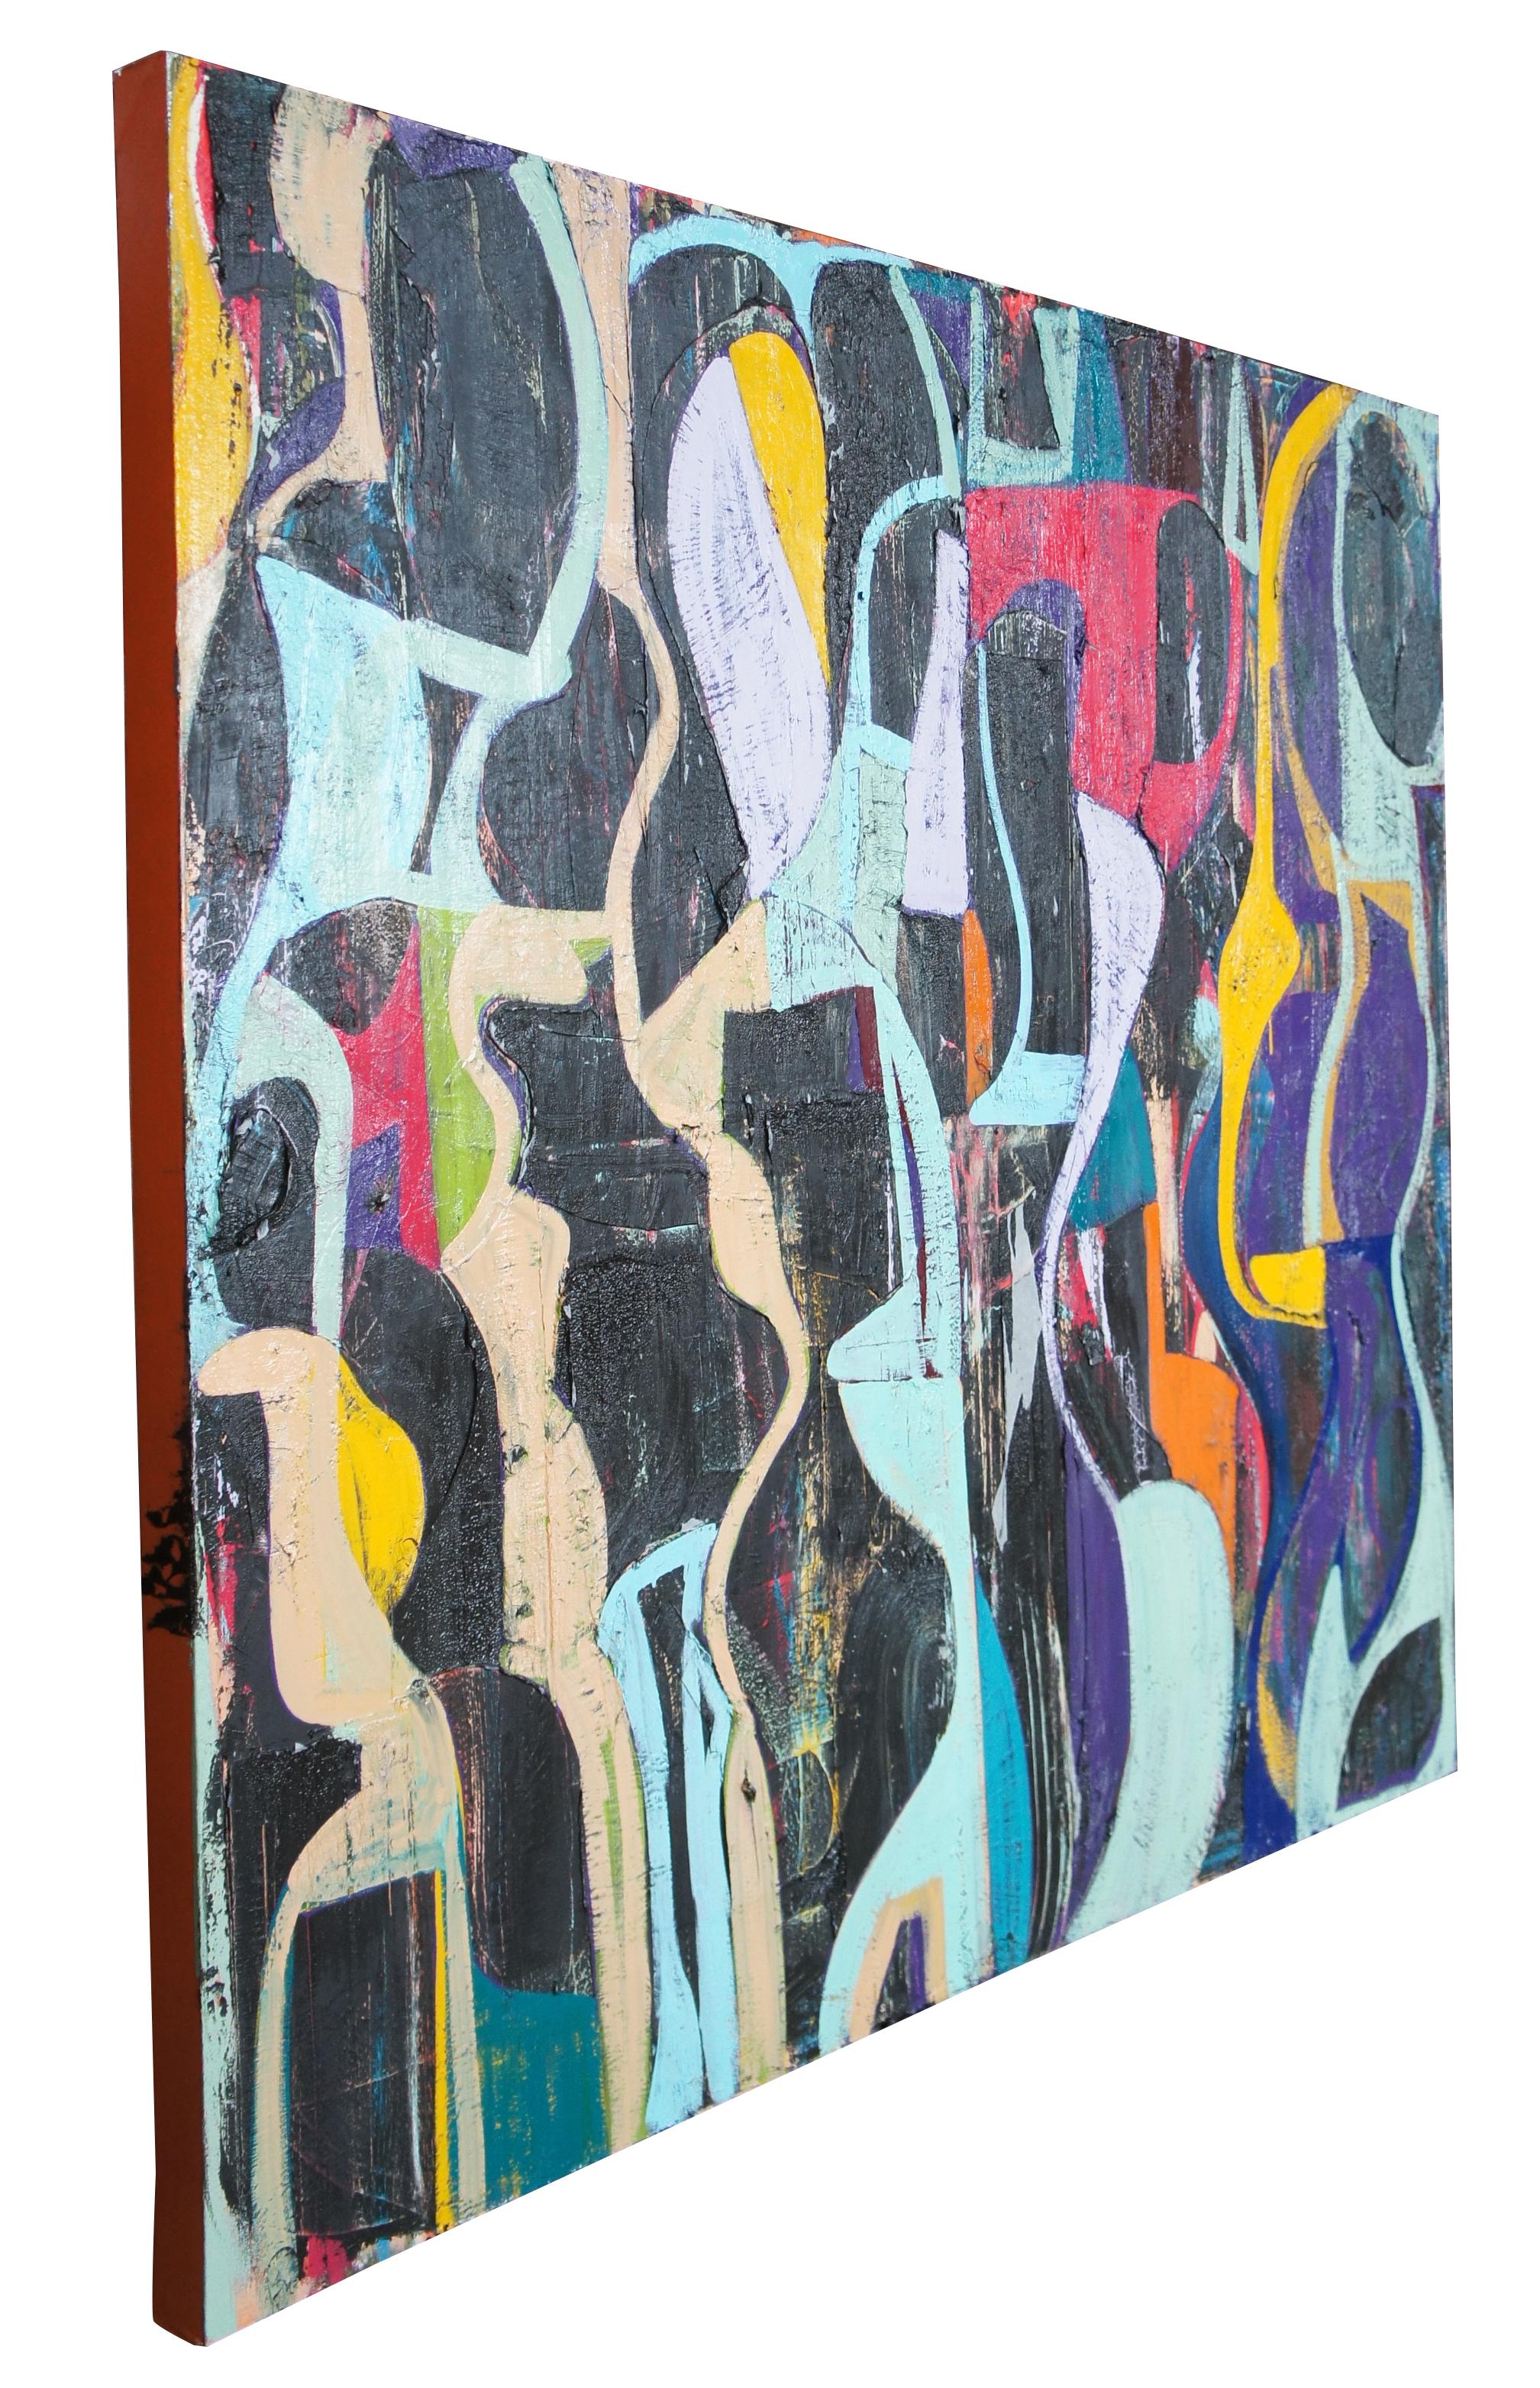 Grande peinture expressionniste moderne abstraite de Jason Fascination. Peint à l'acrylique avec un mélange coloré de teintes vibrantes. Toile montée sur un cadre en bois, peinte sur les côtés. Mesure : 66